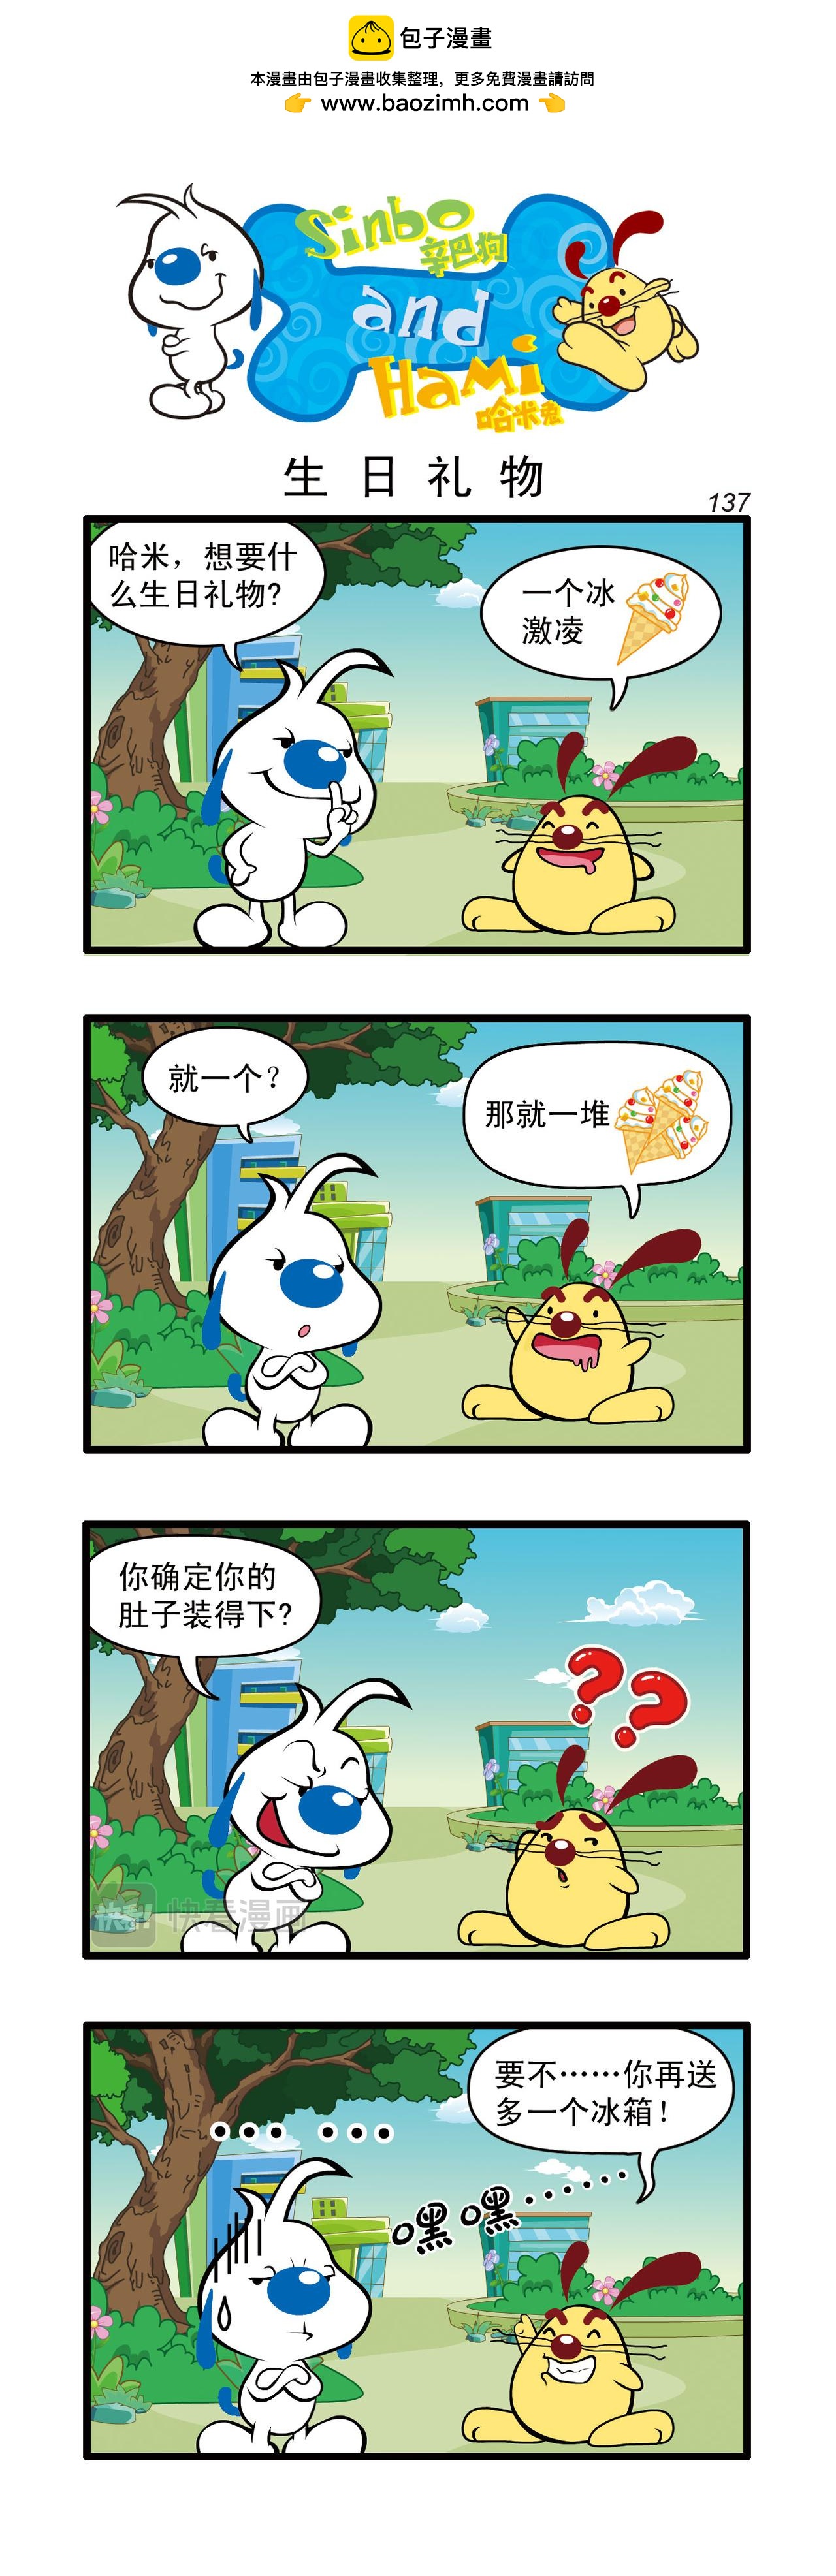 辛巴狗日常漫畫 - 多格41 - 1